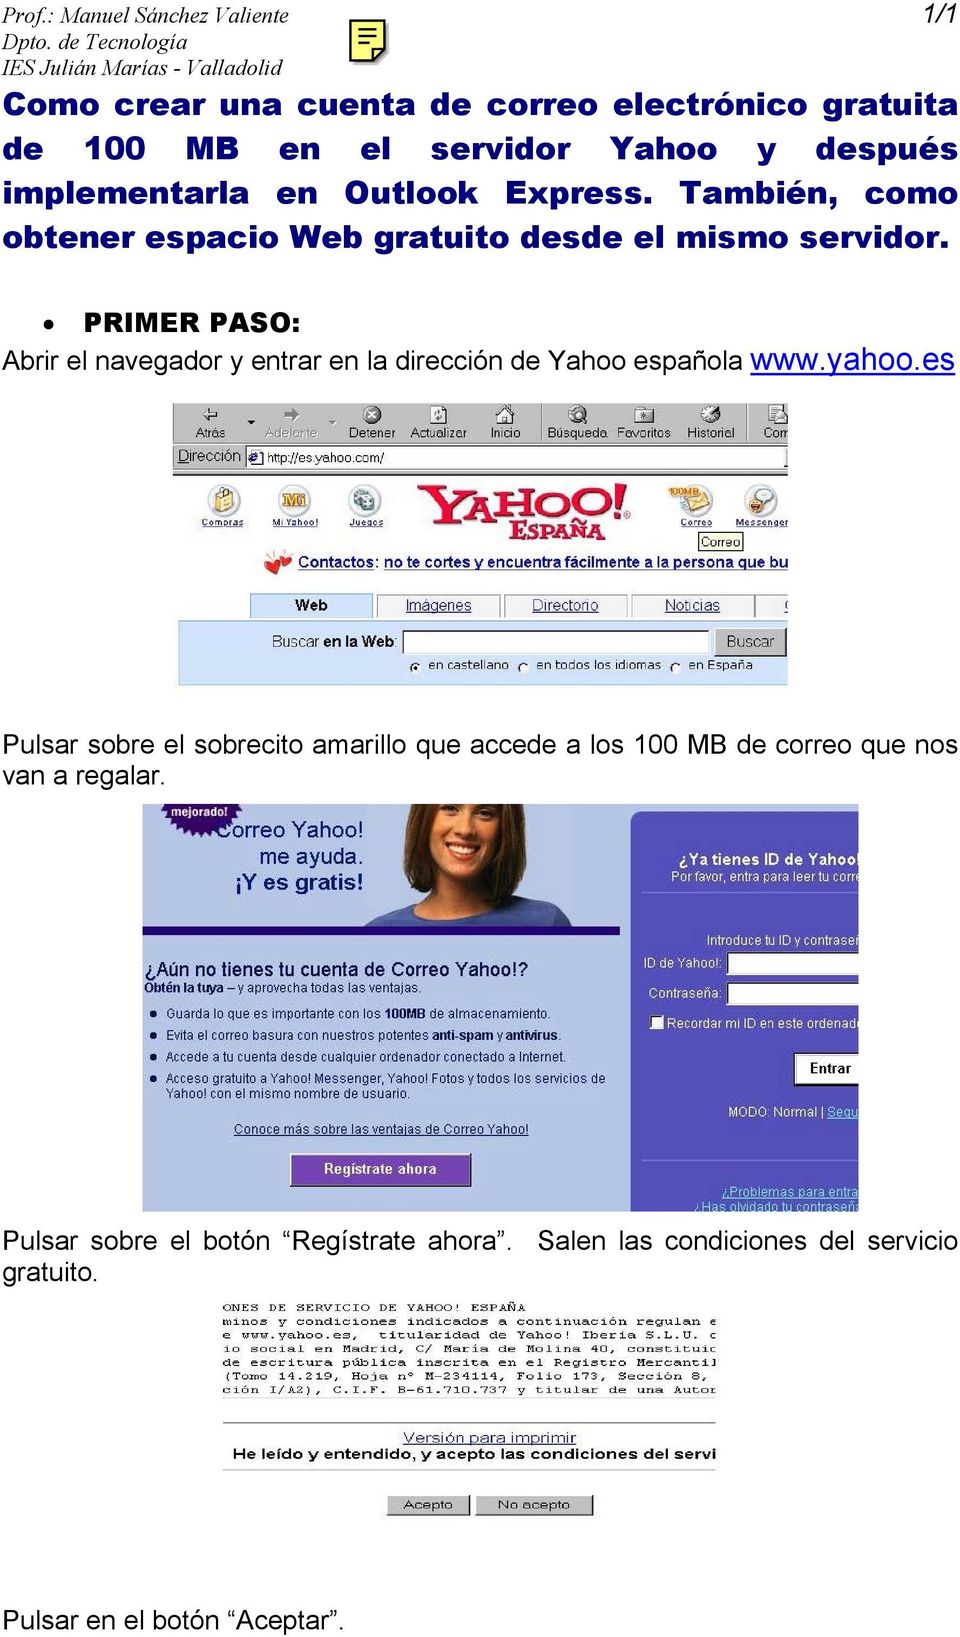 PRIMER PASO: Abrir el navegador y entrar en la dirección de Yahoo española www.yahoo.